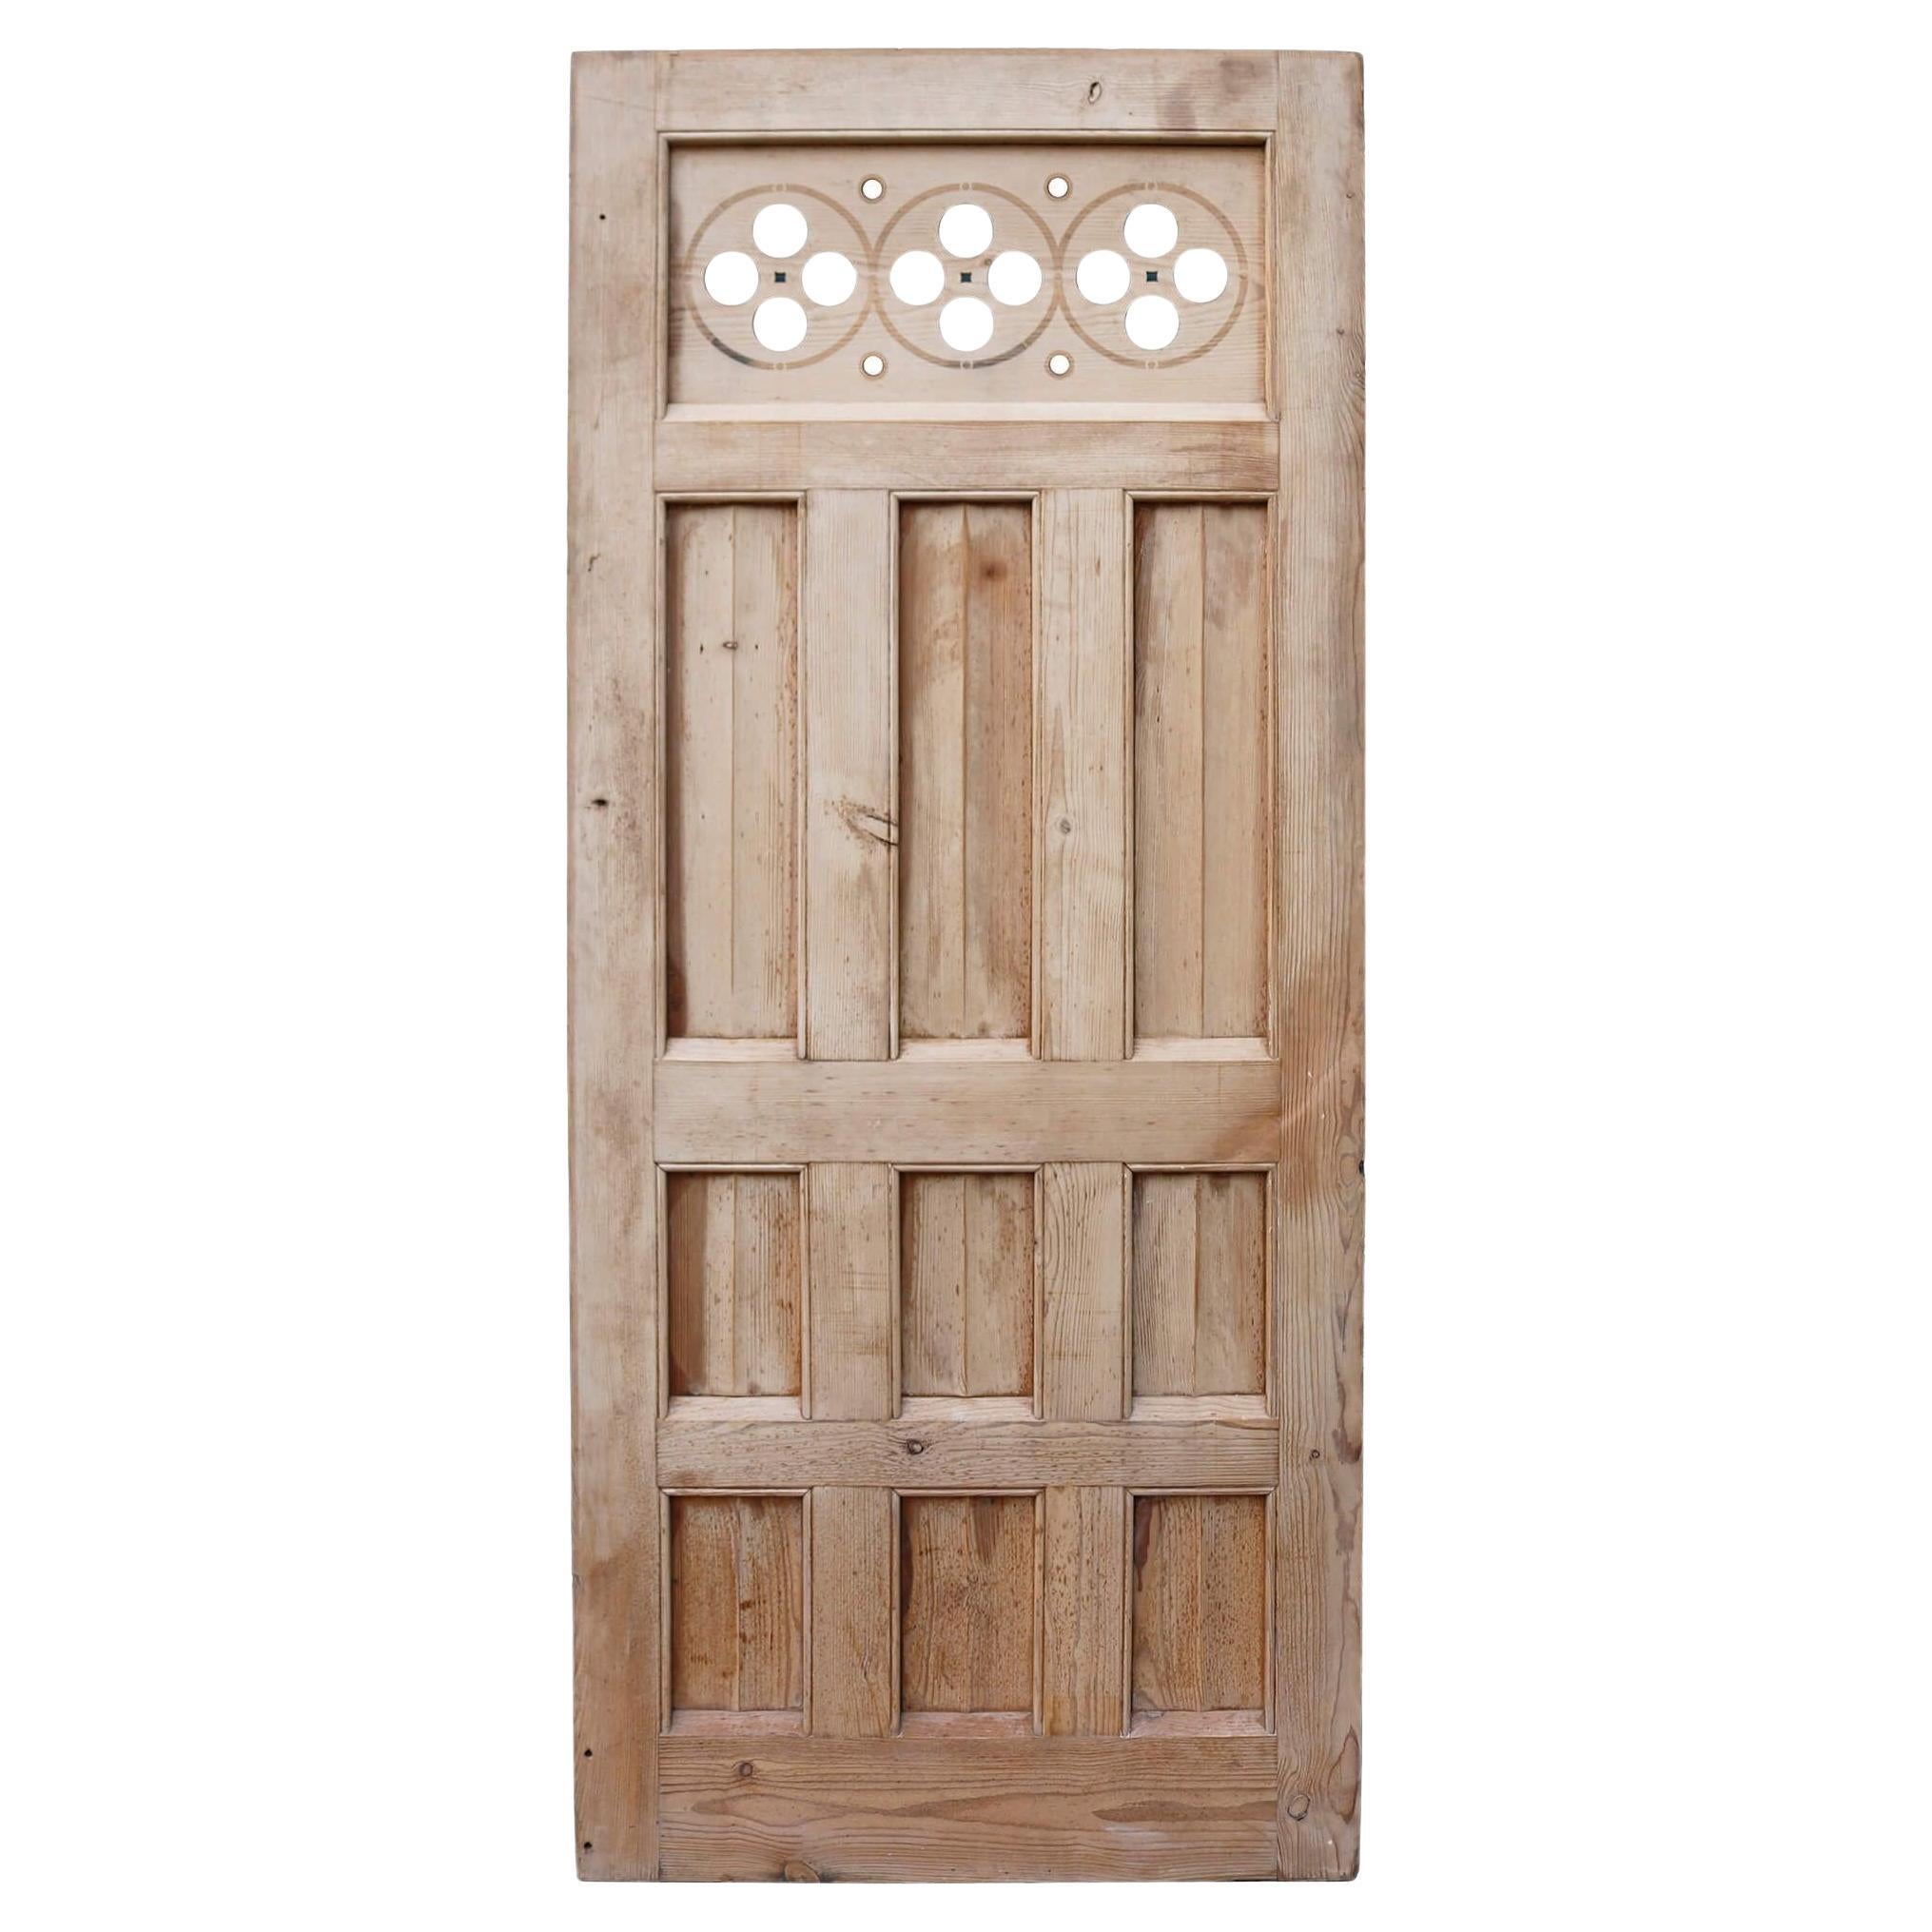 Wandpaneel oder Tür im kirchlichen Stil